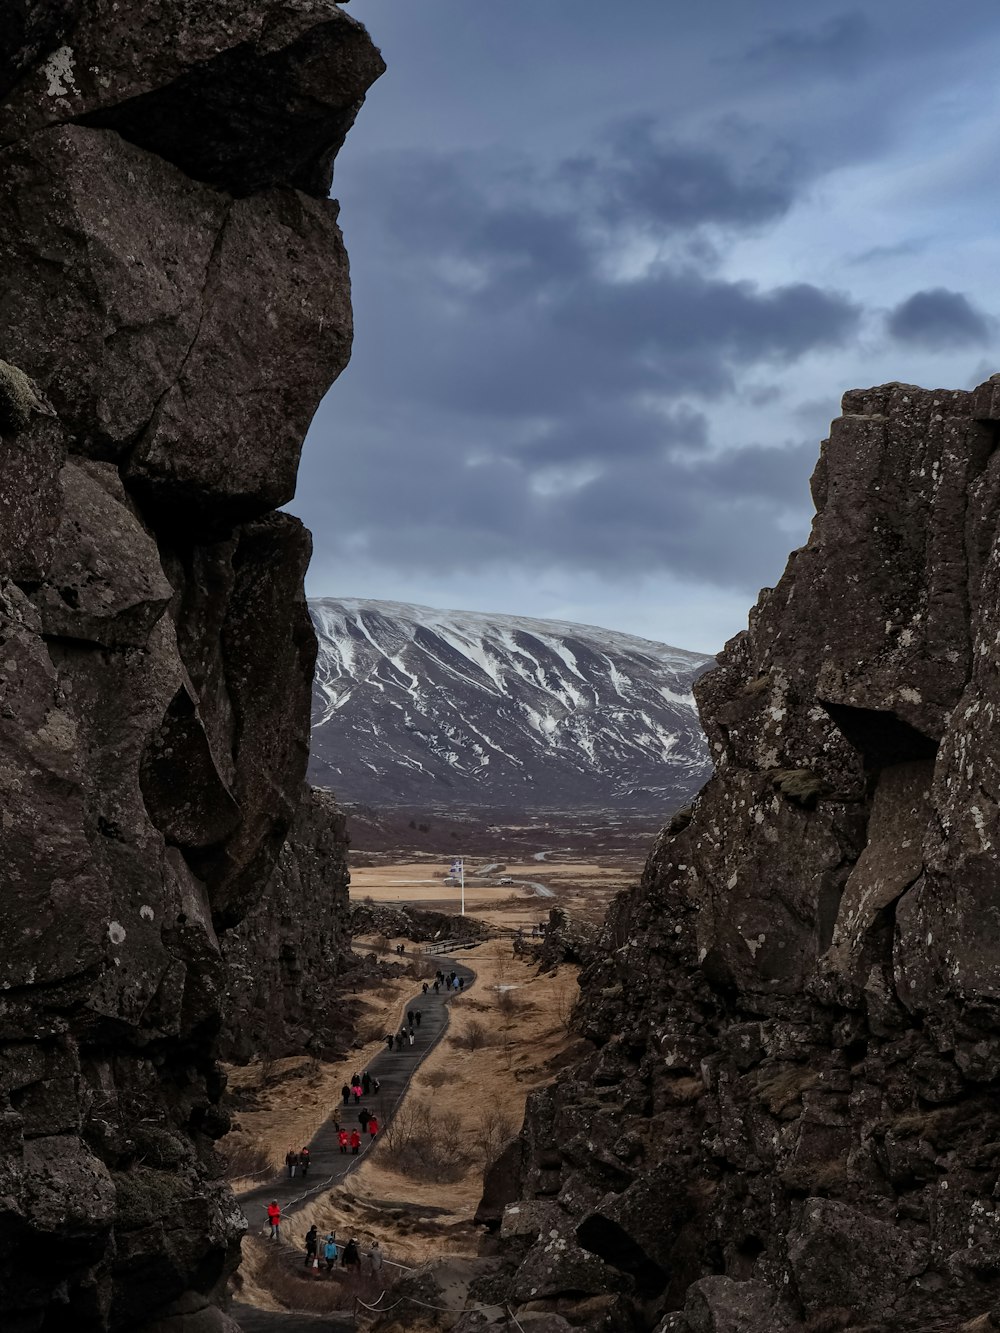 Un grupo de personas de pie en la cima de una ladera rocosa